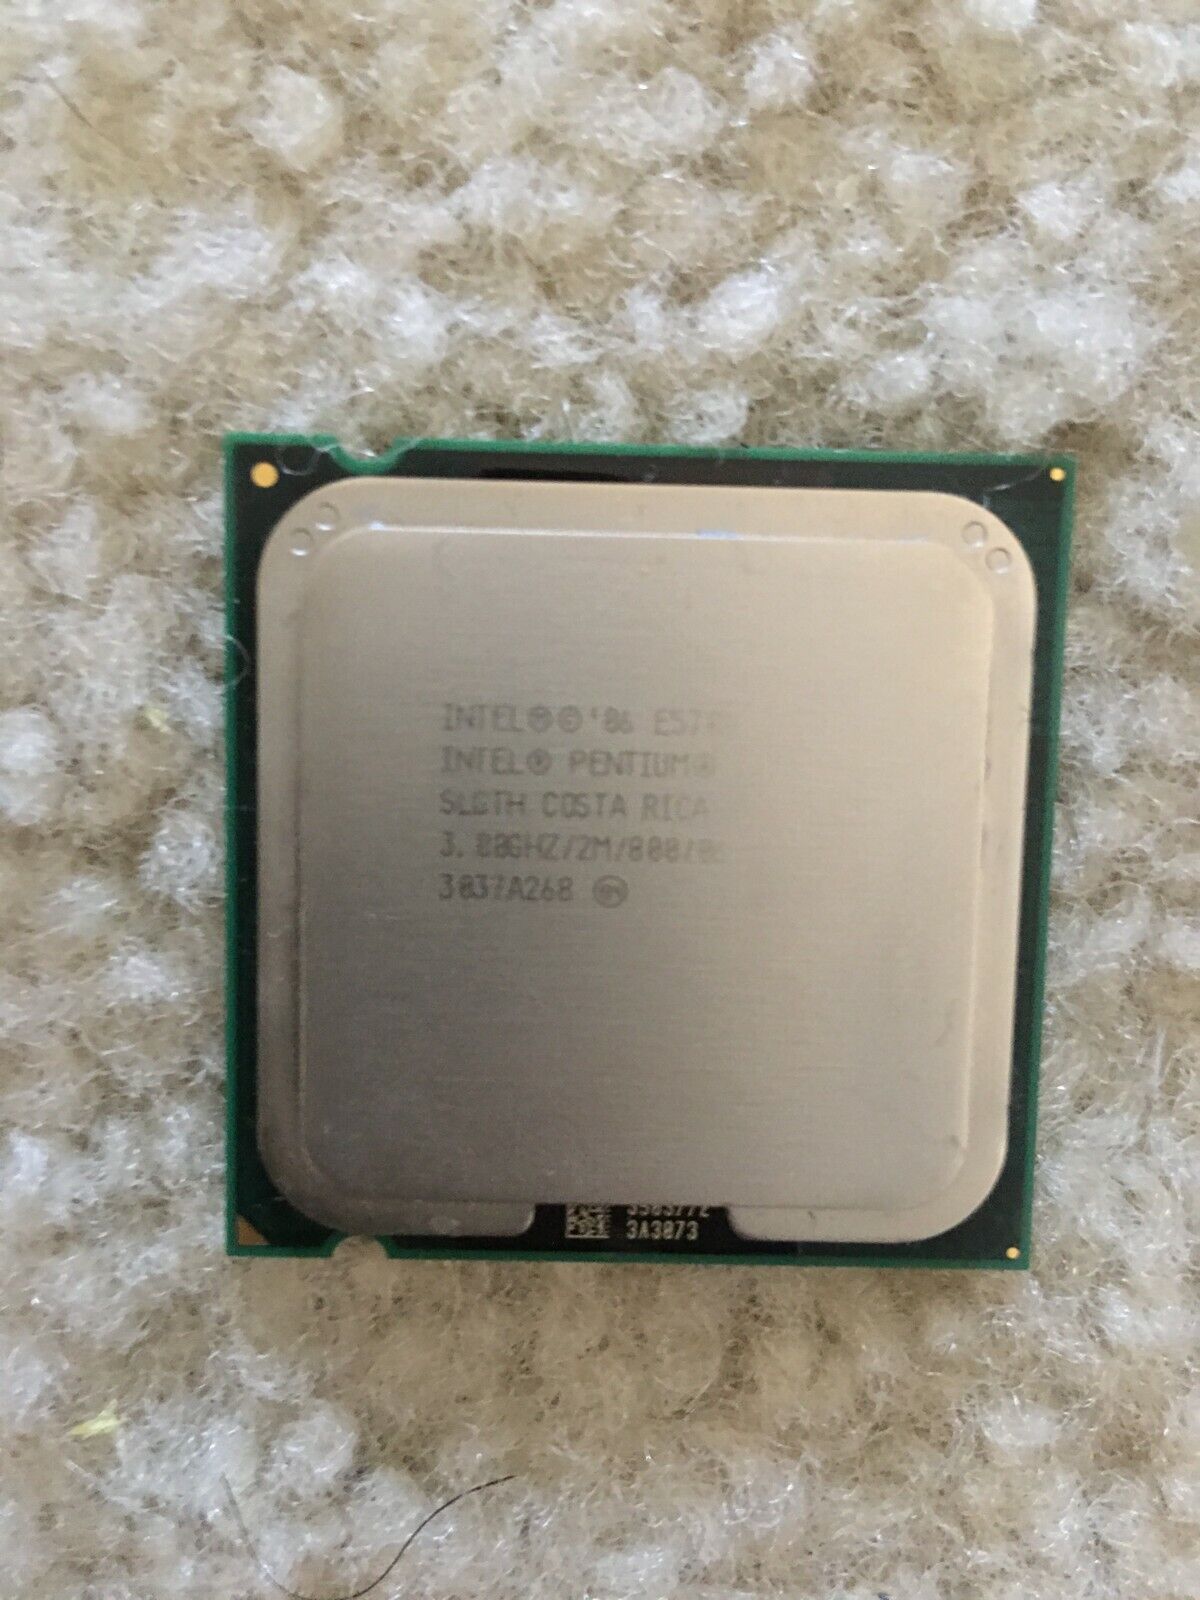 Intel Pentium 4 CPU 3.00GHZ/2M/800/06 SLGTH COSTA RICA E5700 3037A268 3503772